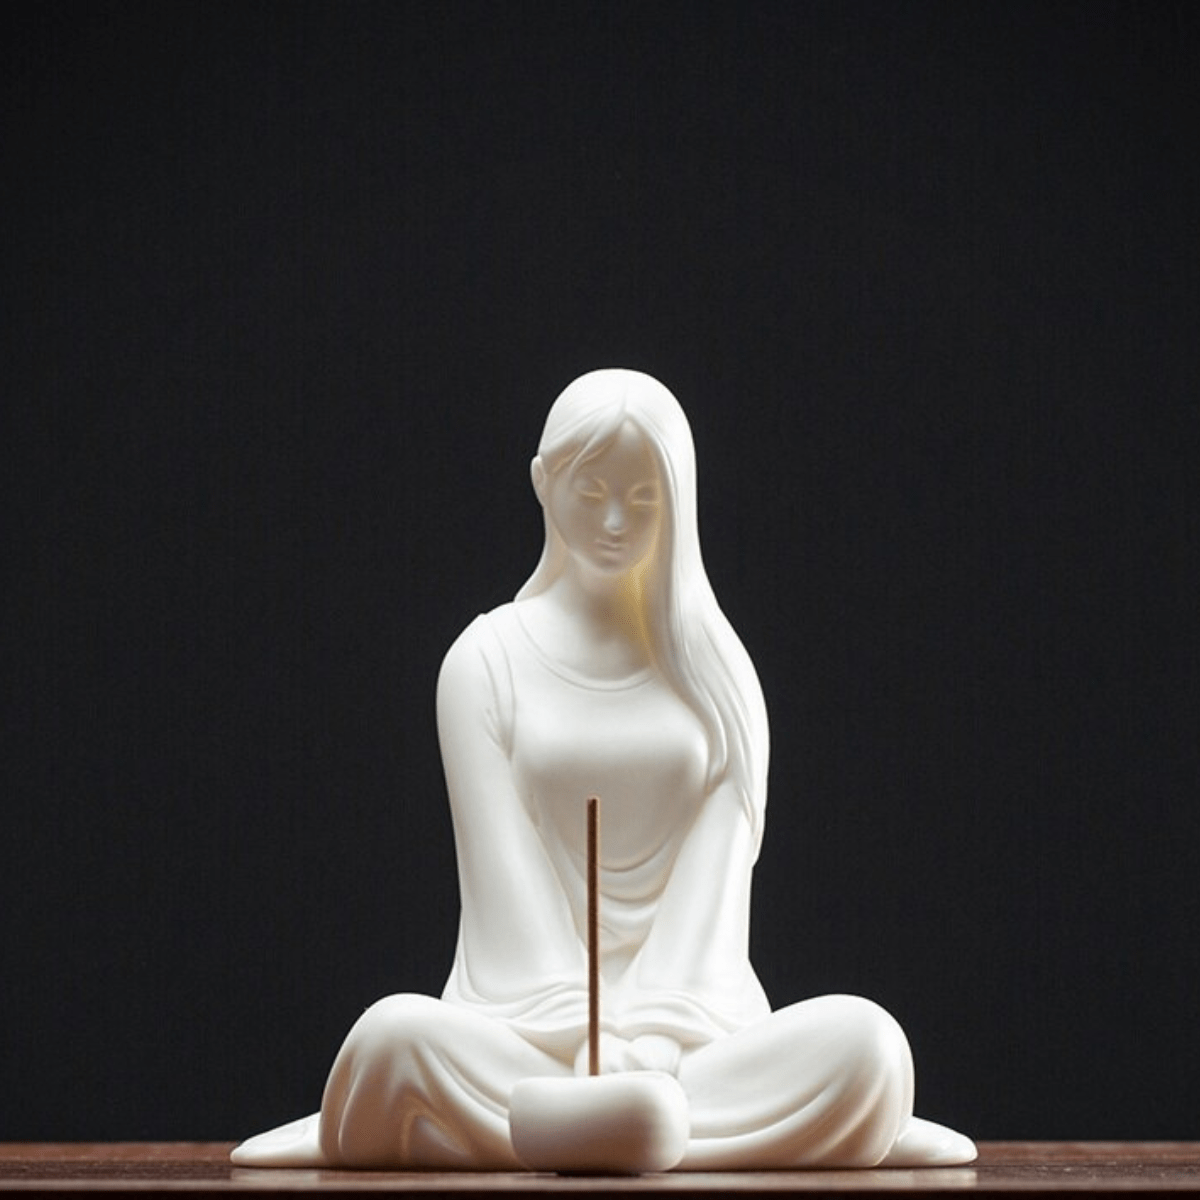 wickedafstore C Zen Beauty Incense Holder Figurine